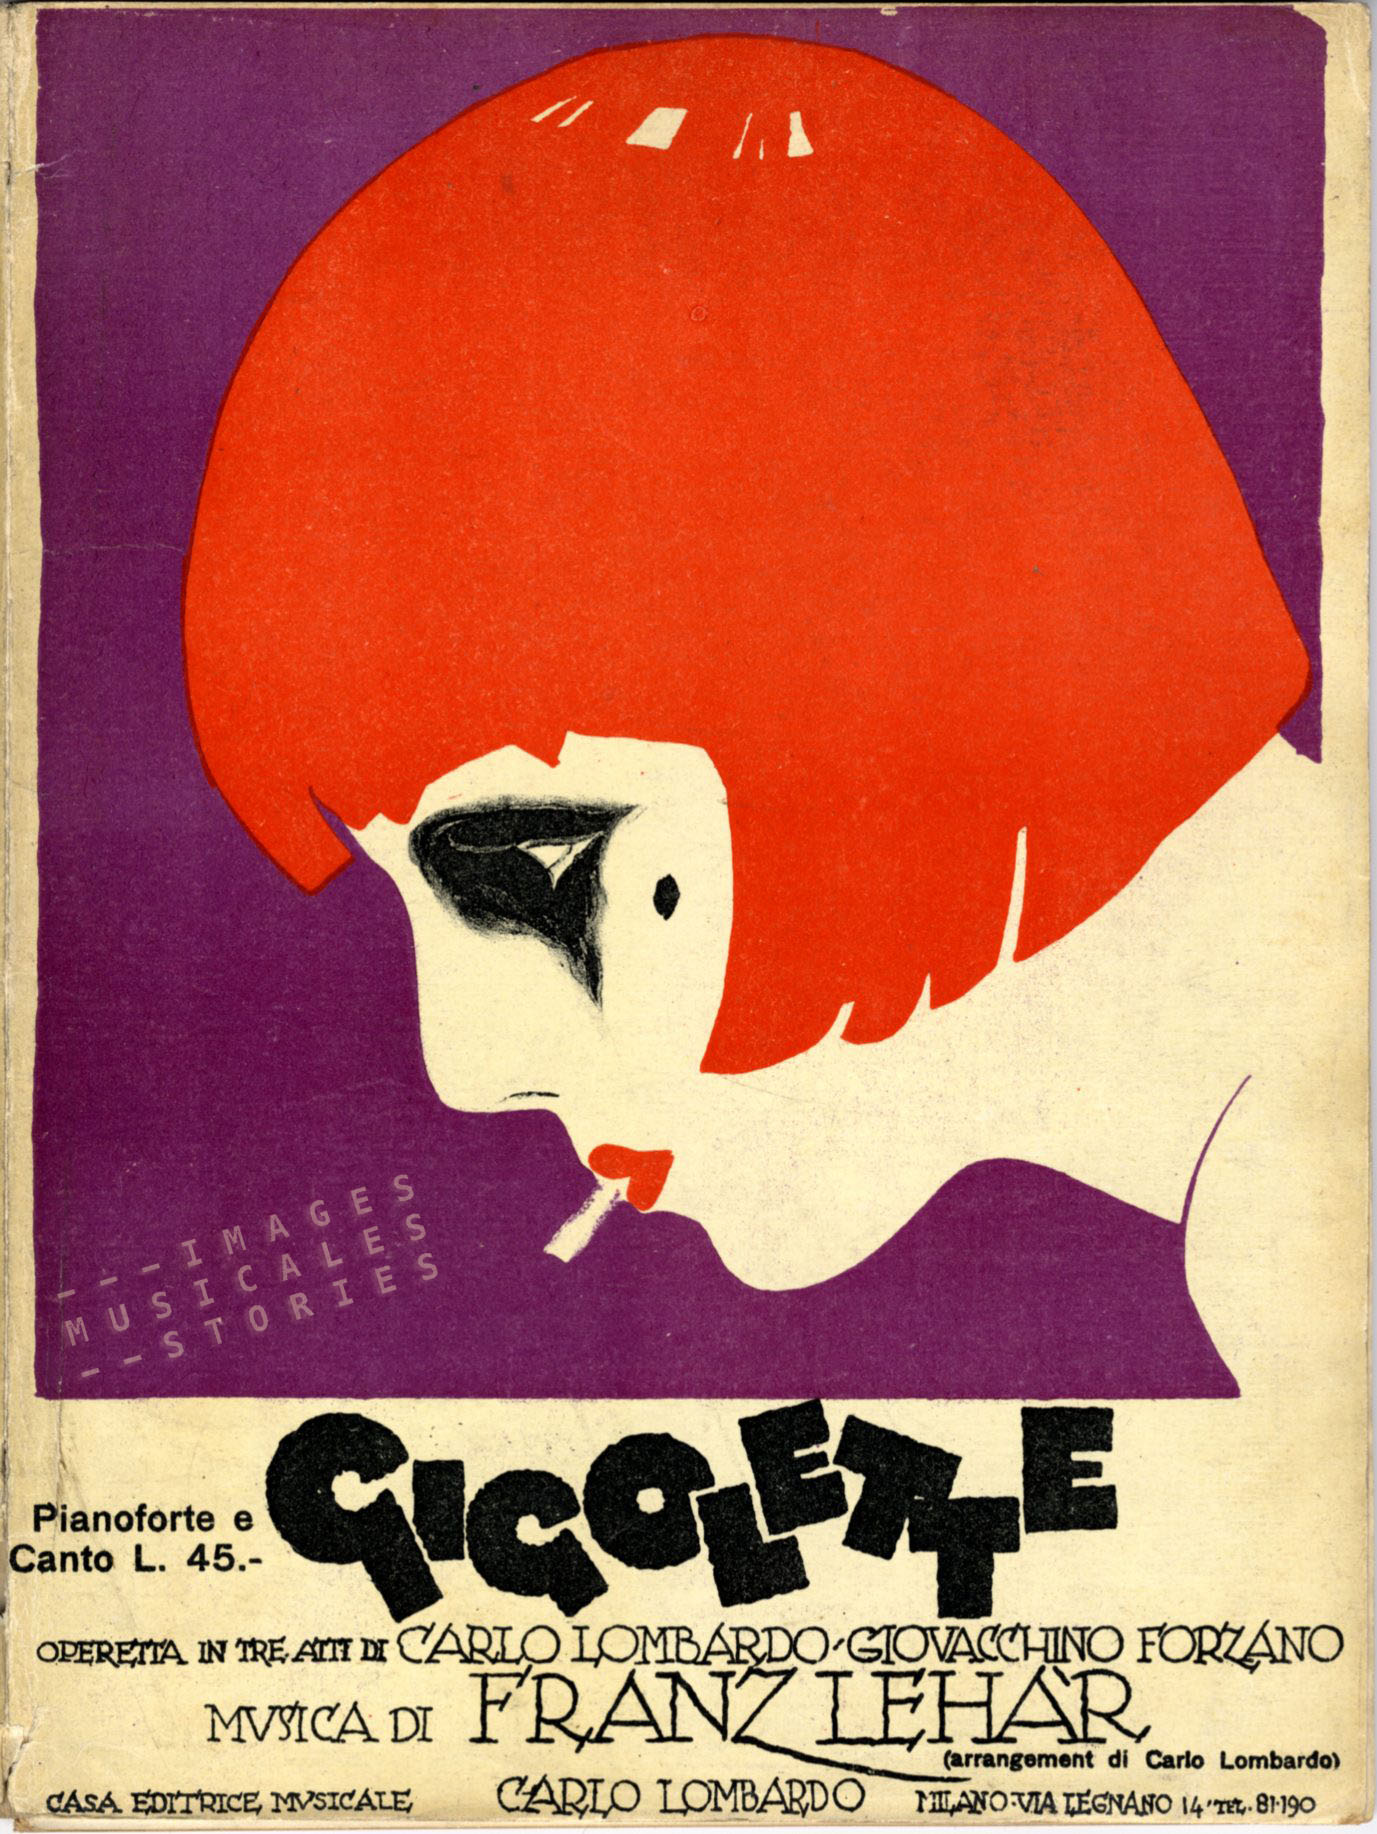 An Italian version of 'Gigolette' (Carlo Lombardo pub., Milano, 1926). Unknown illustrator.